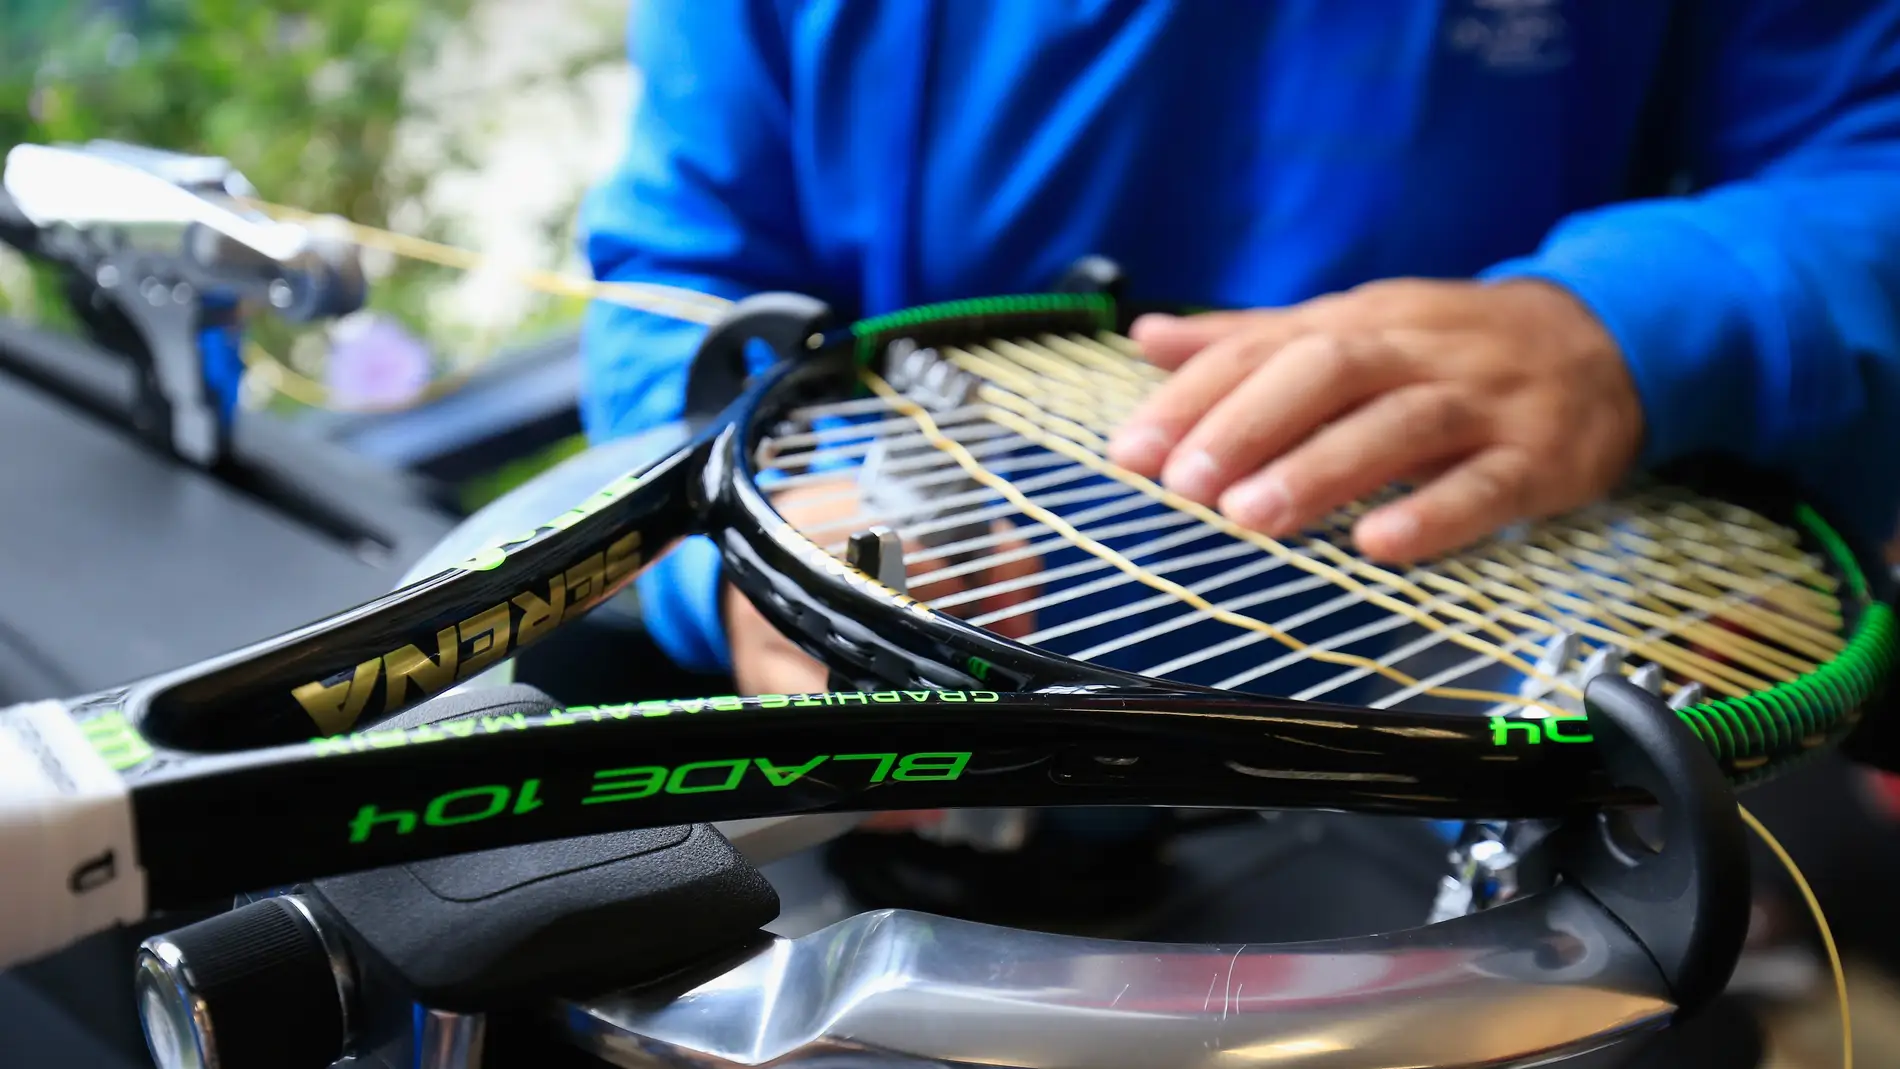 Un persona encuerda una raqueta de tenis